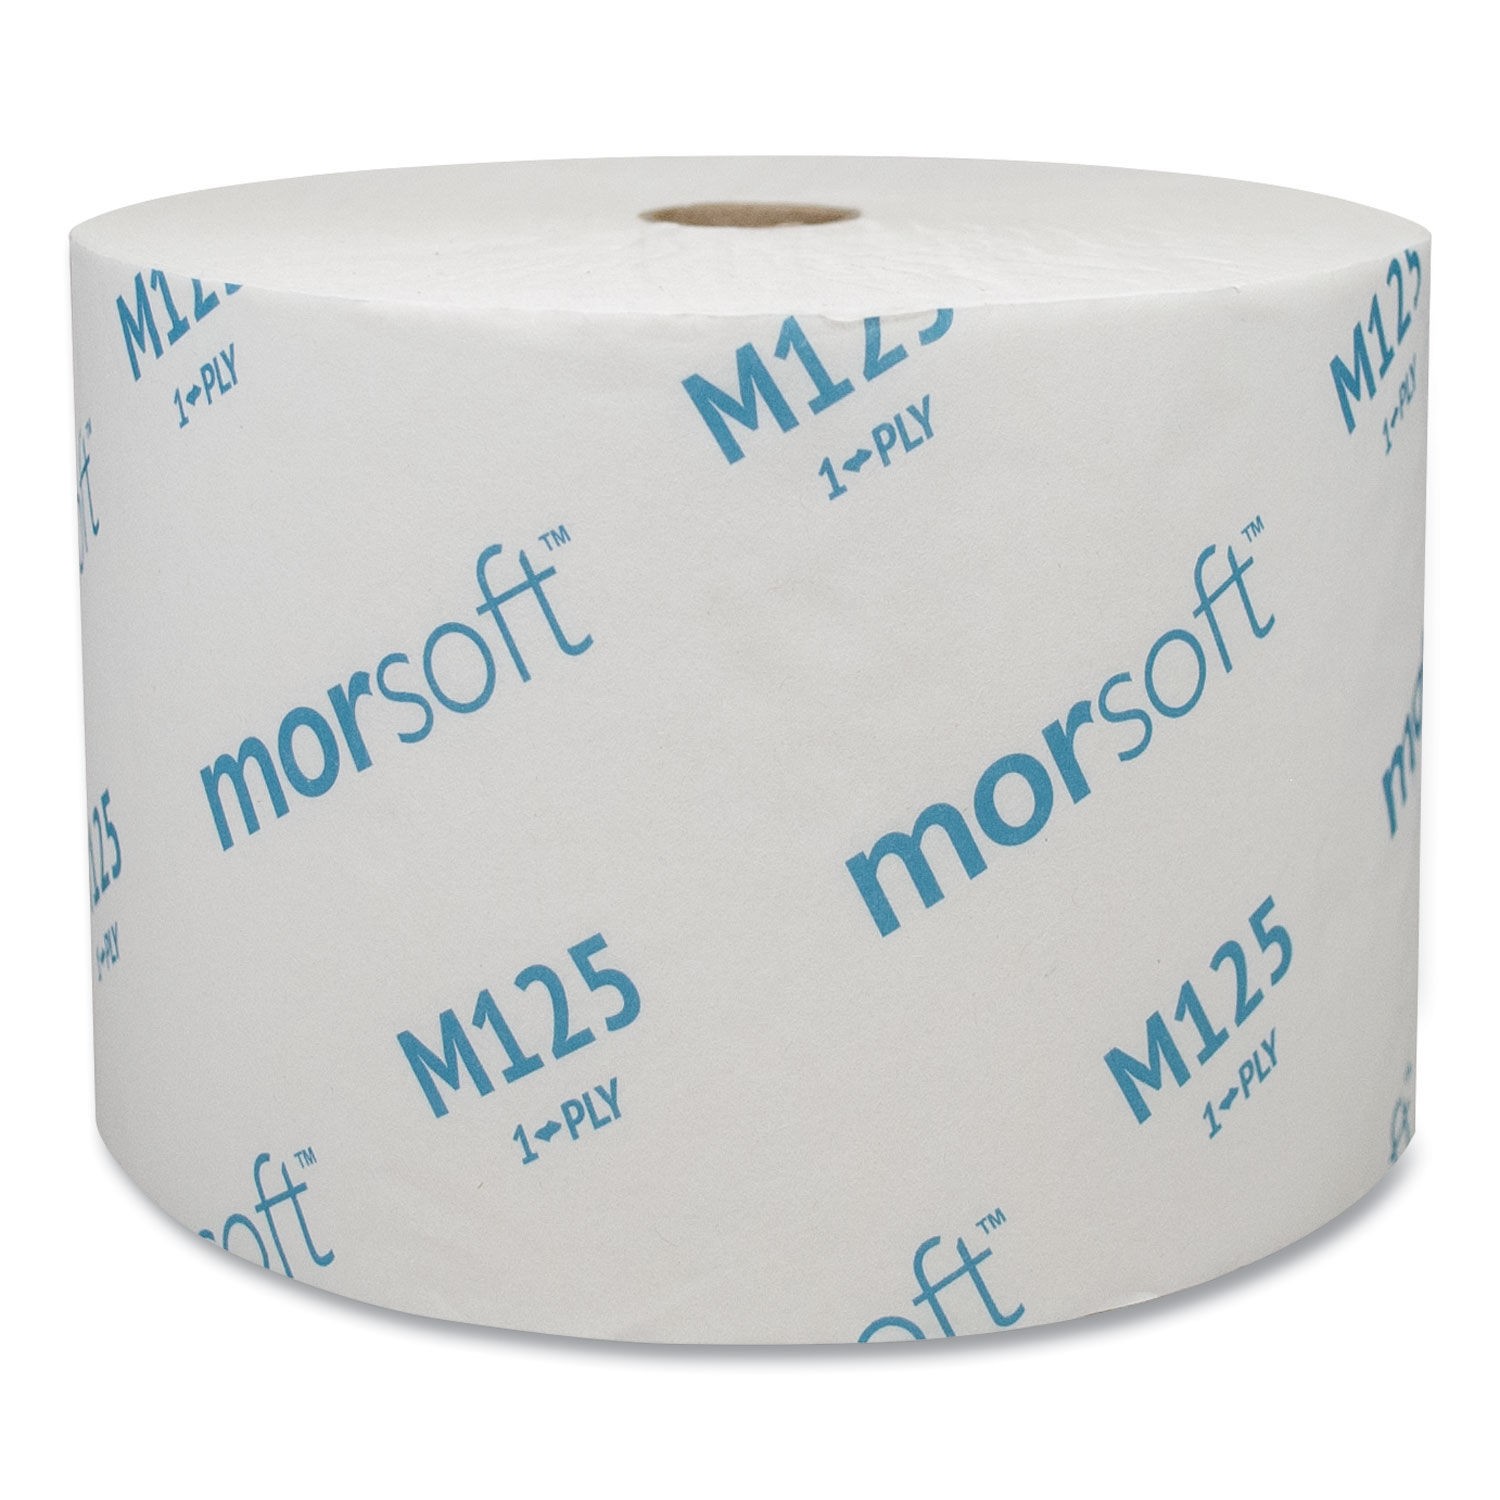 Morsoft Small Core 1-Ply Bath Tissue,  24 Rolls/Carton